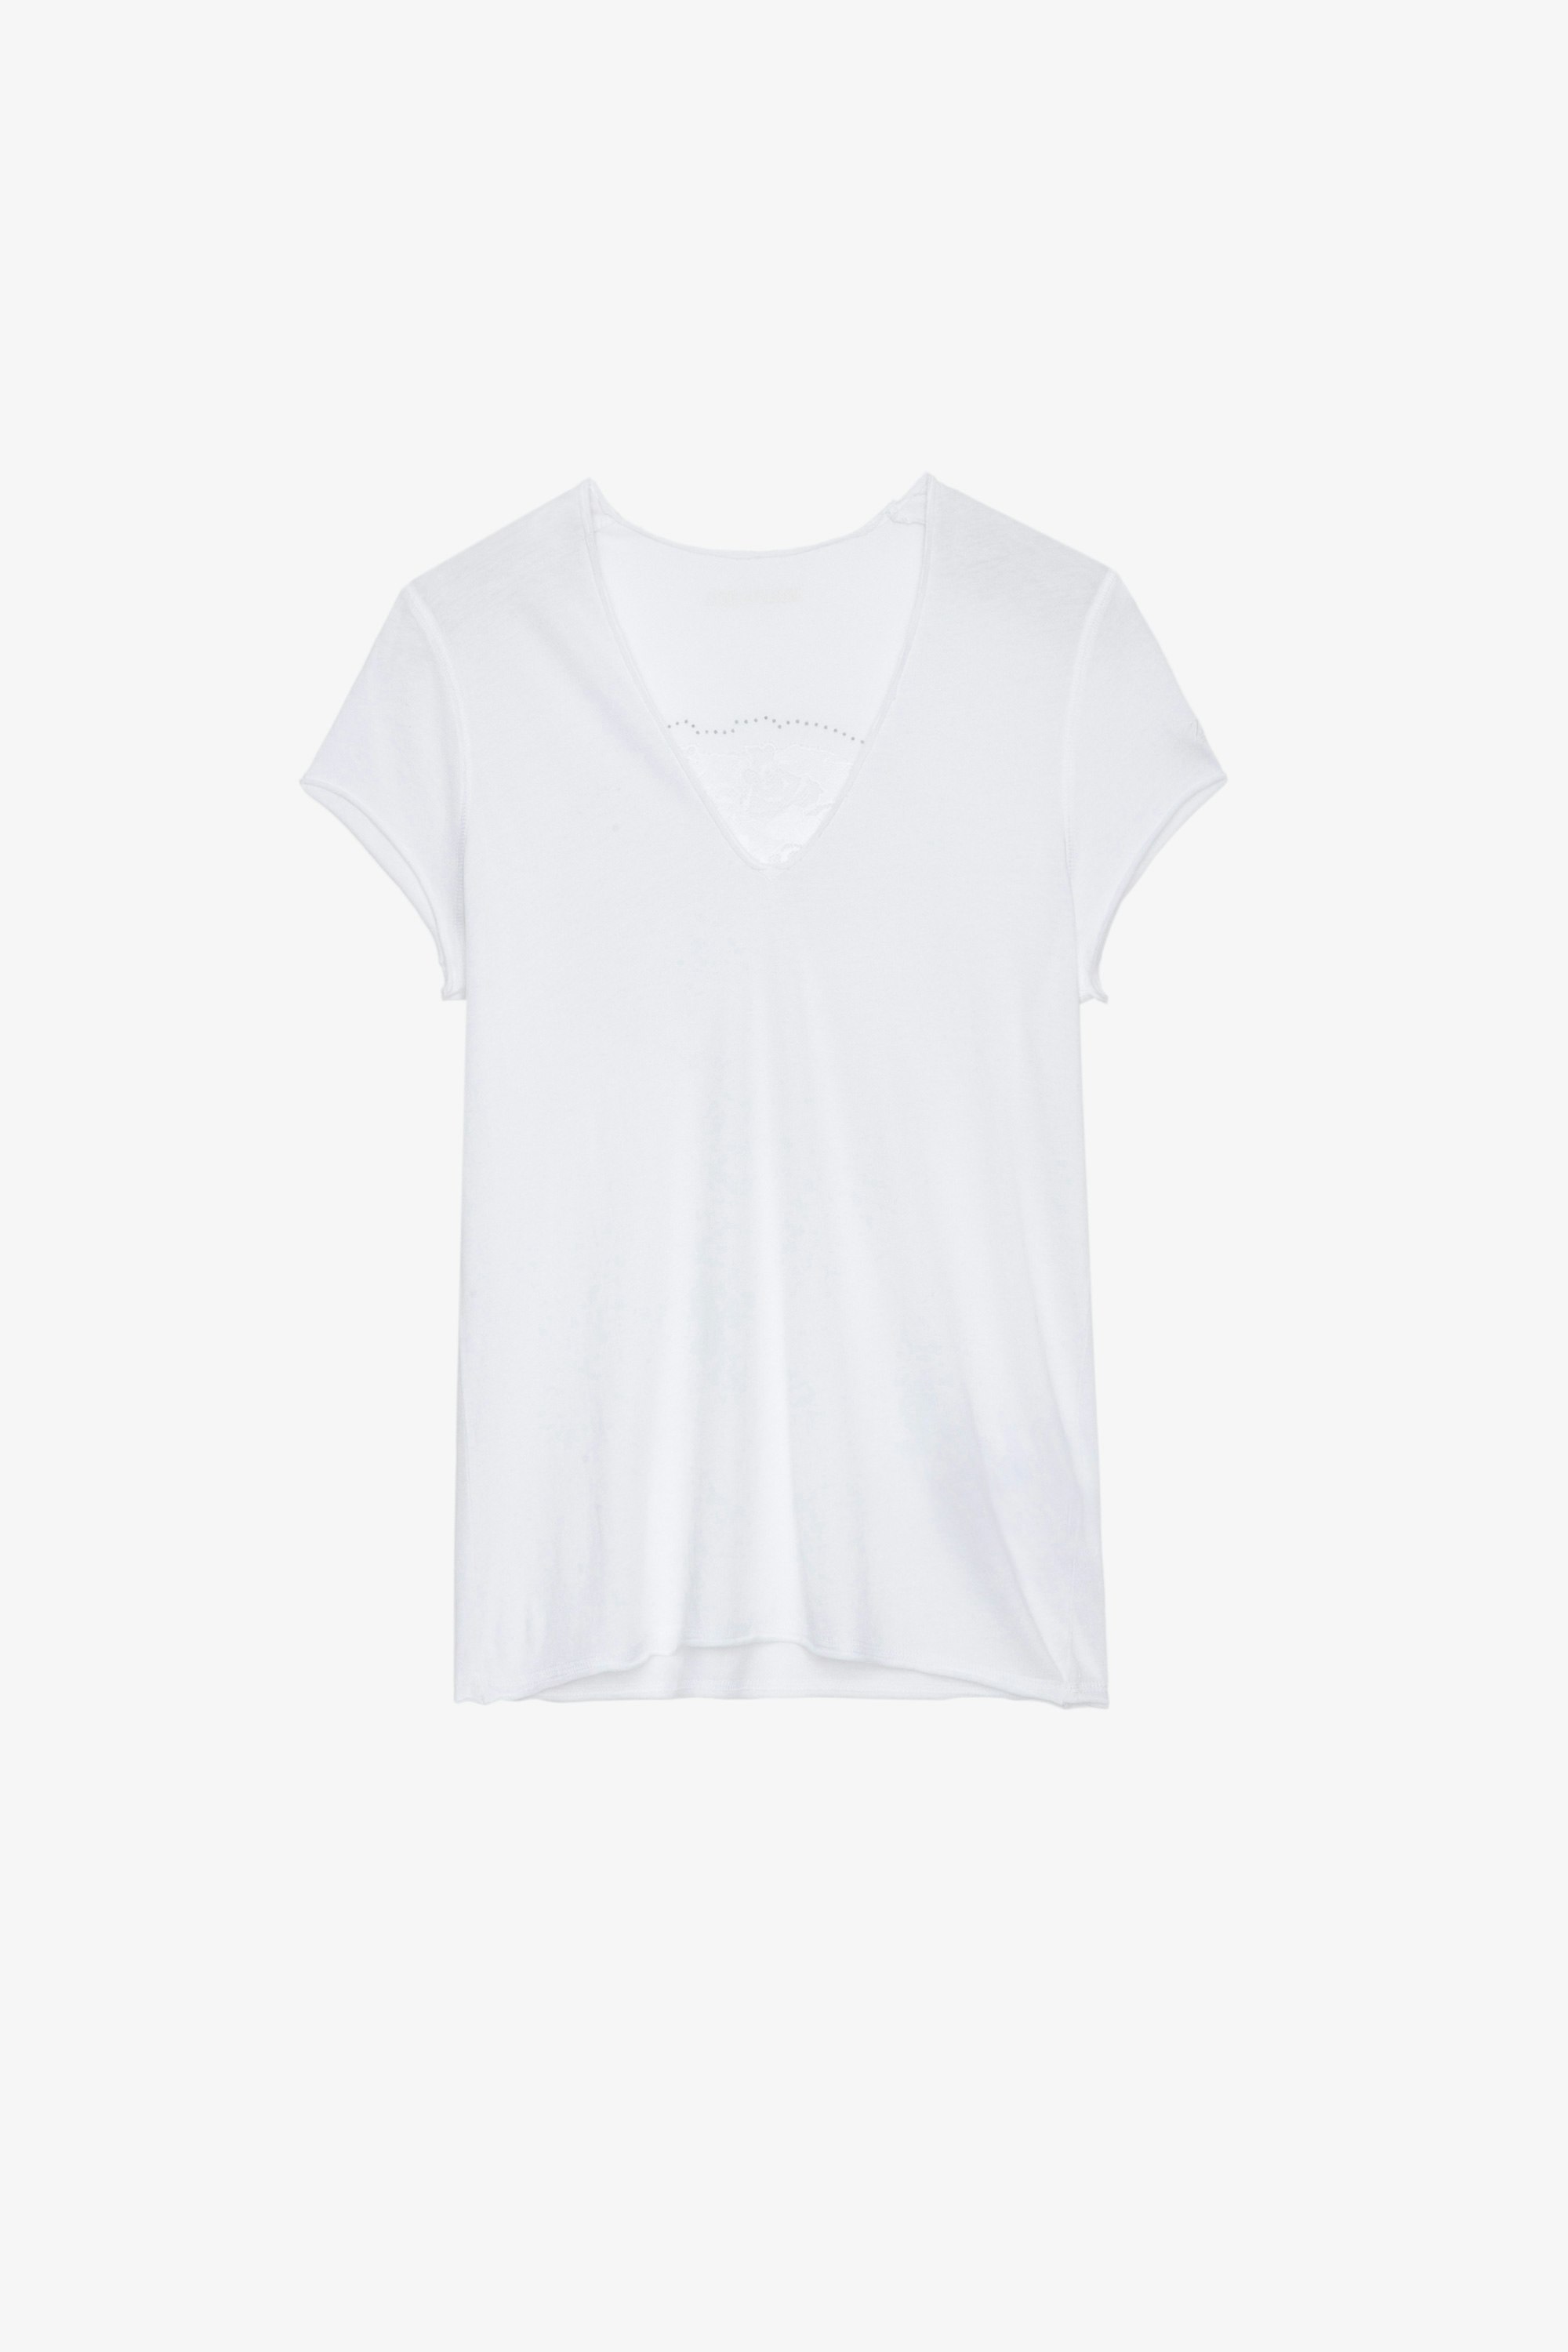 T-Shirt Story Fishnet Damen-T-Shirt aus weißer Baumwolle mit Totenkopf- und Blumenmotiv und Kristallen auf dem Rücken